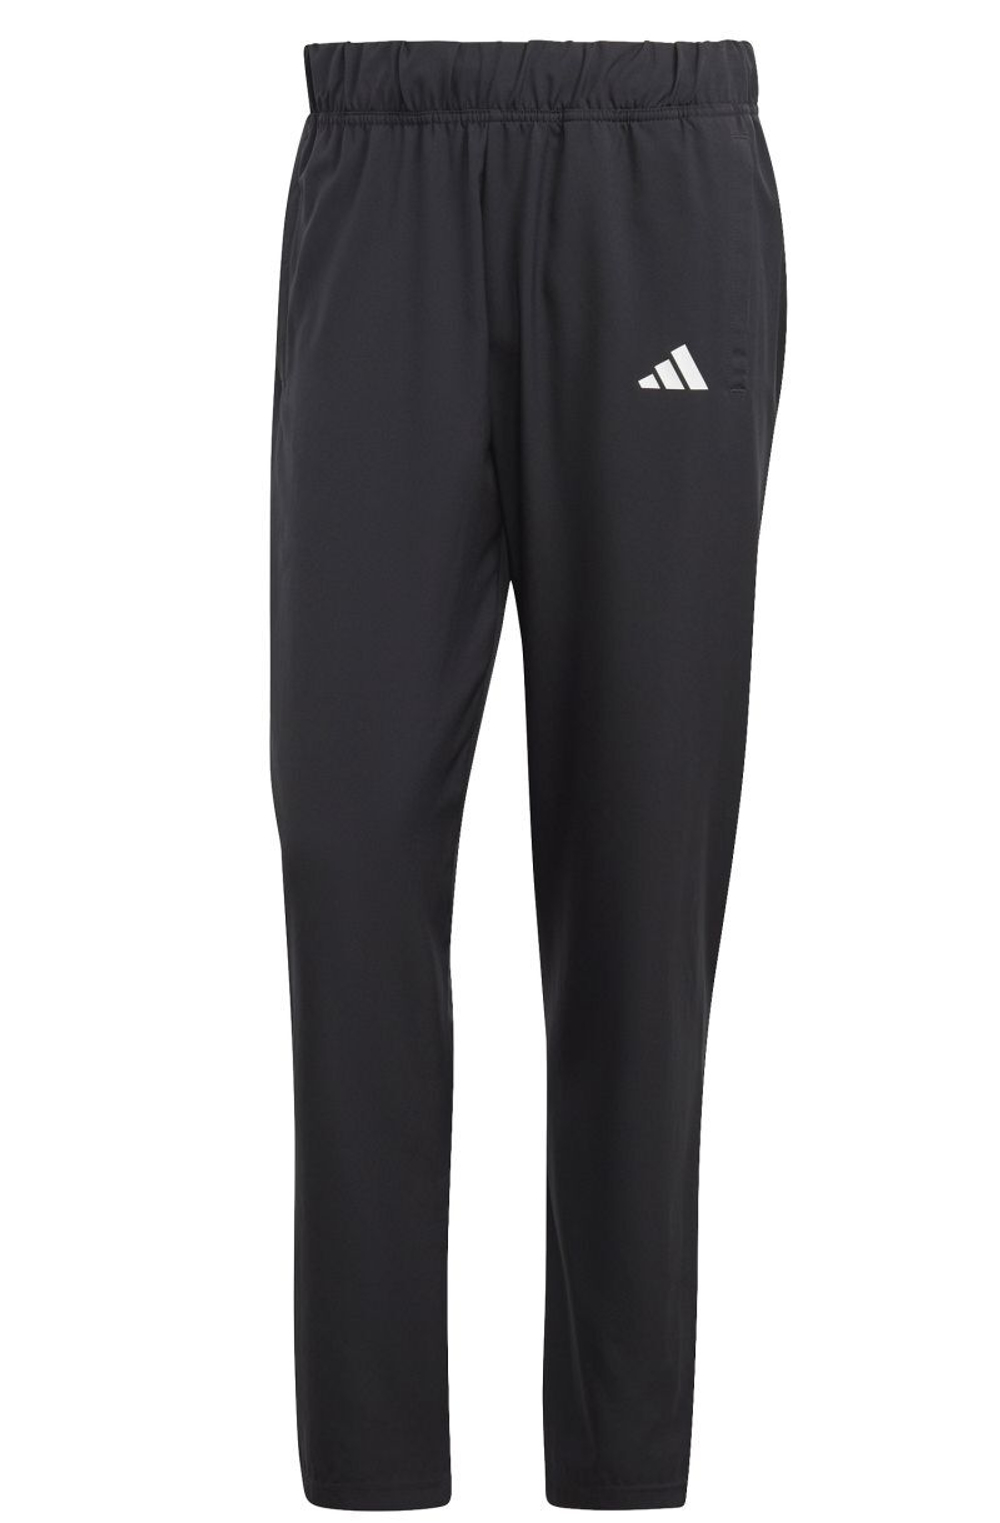 Мужские теннисные штаны Adidas Stretch Woven Tennis Pants - black - купить  по выгодной цене